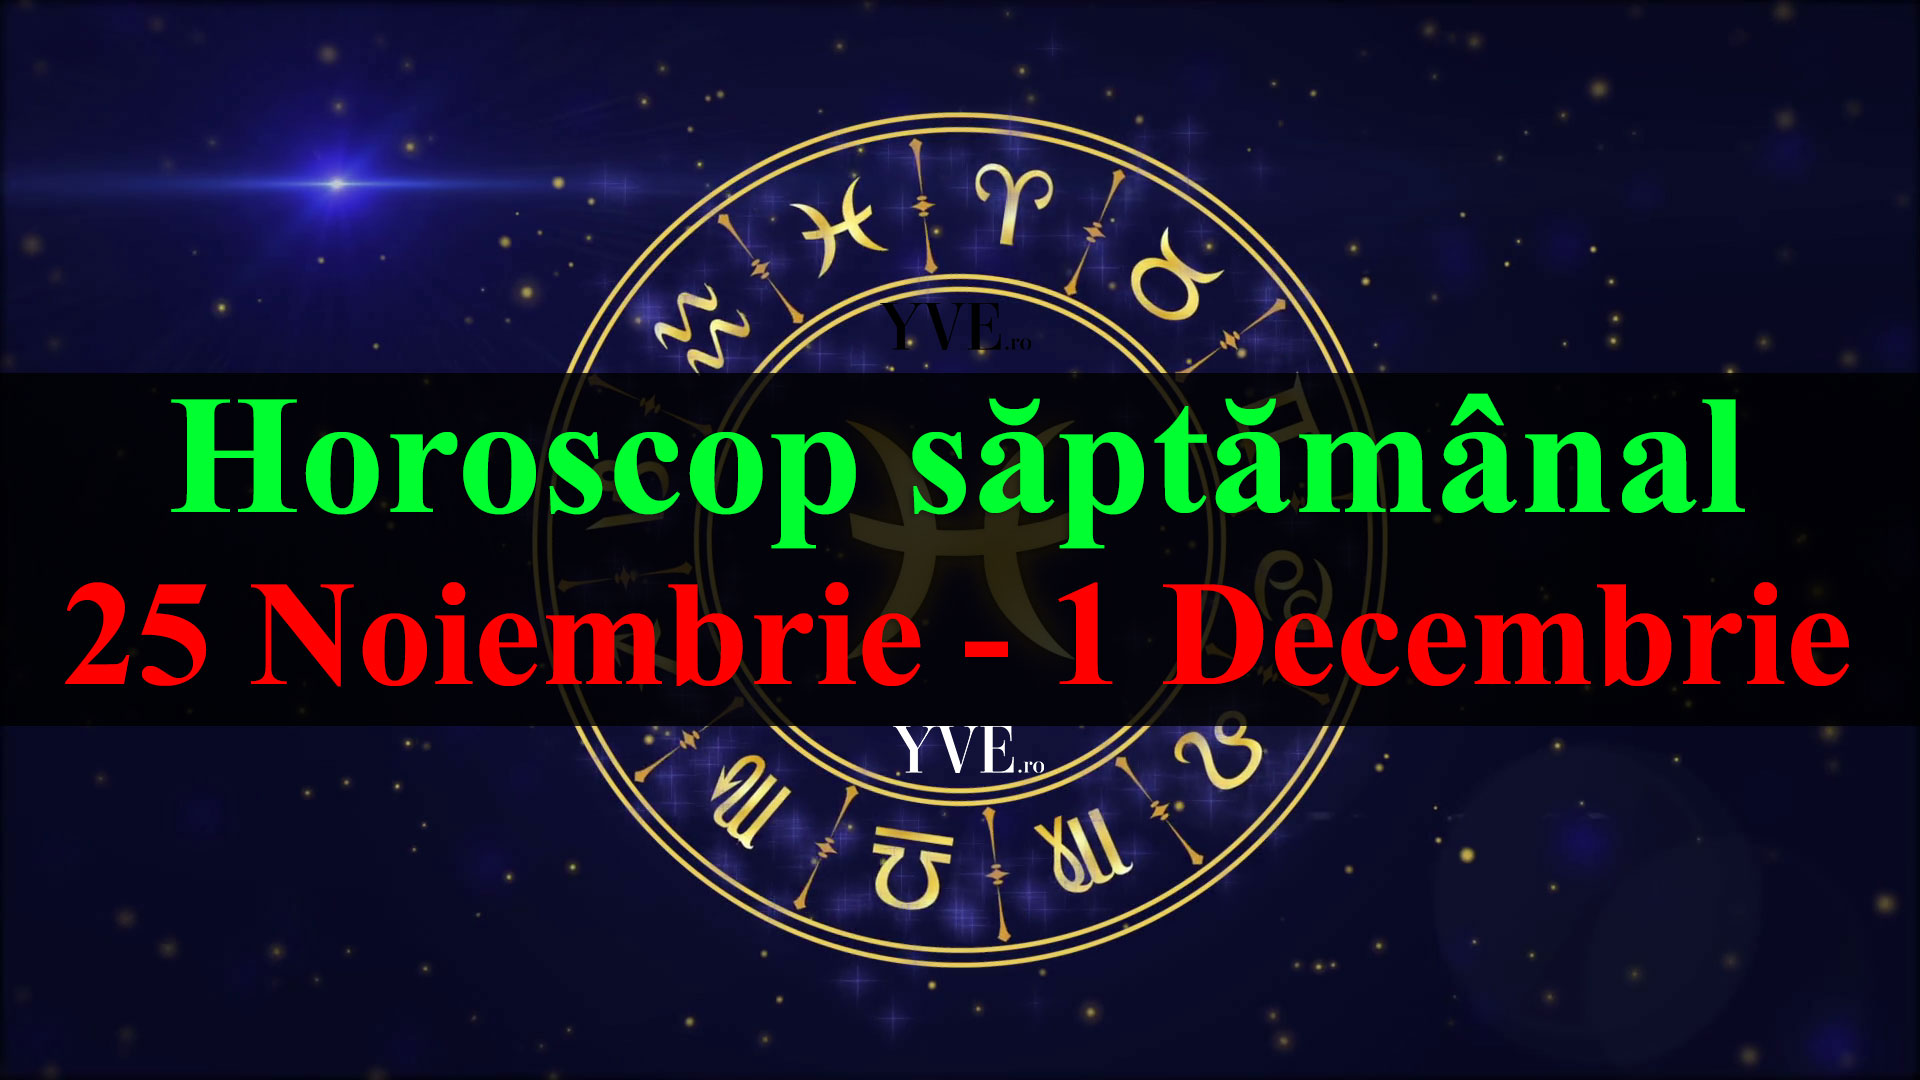 Horoscop saptamanal 25 Noiembrie - 1 Decembrie 2019